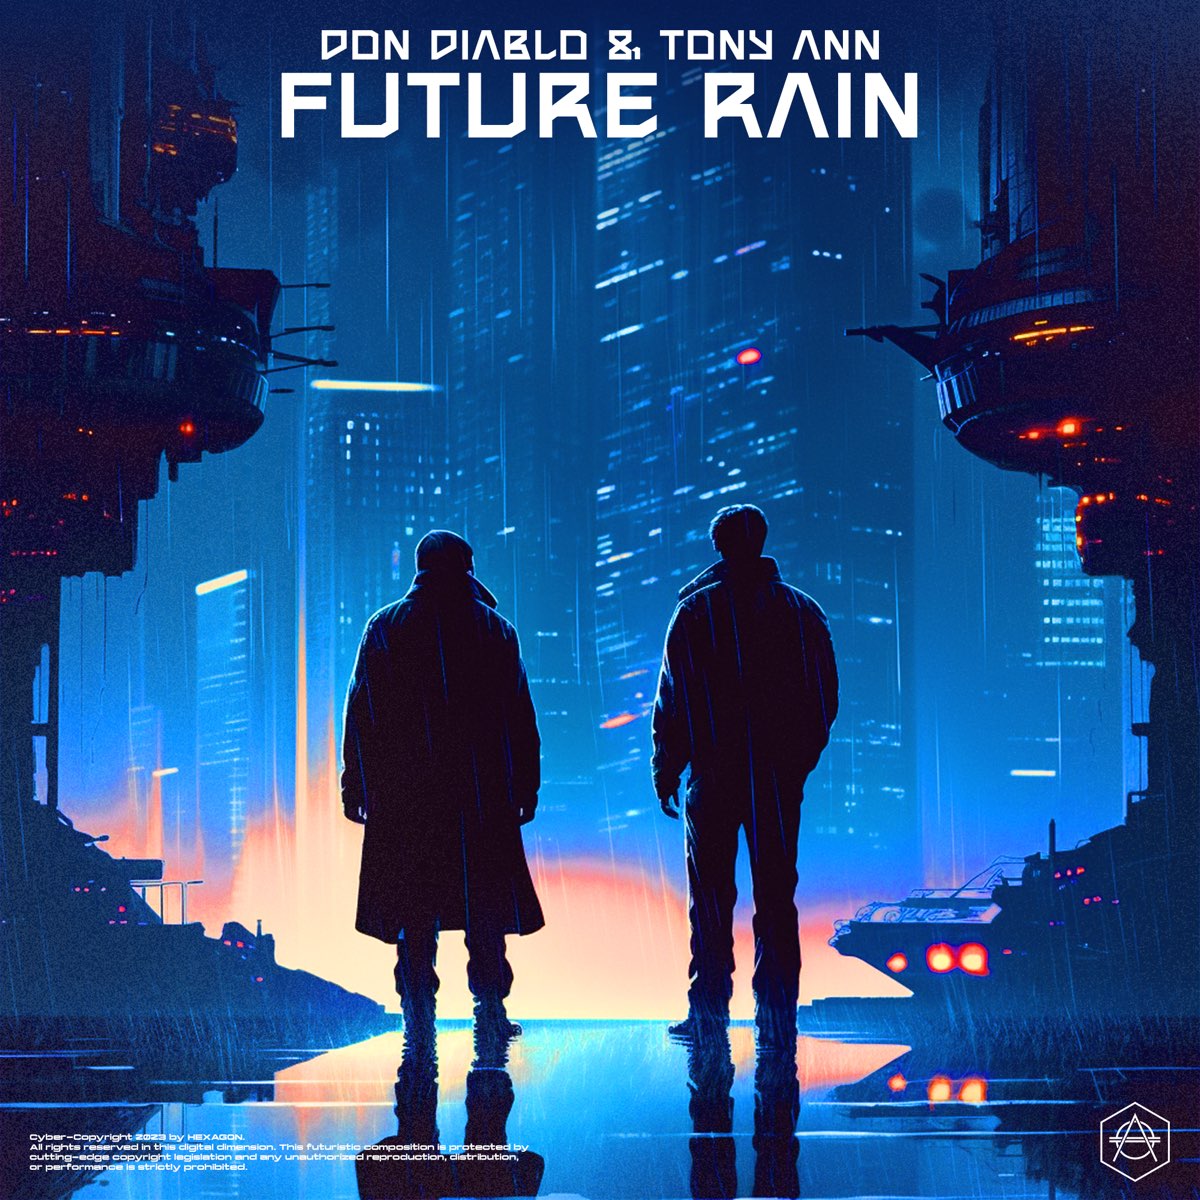 Don Diablo & Tony Ann — Future Rain cover artwork